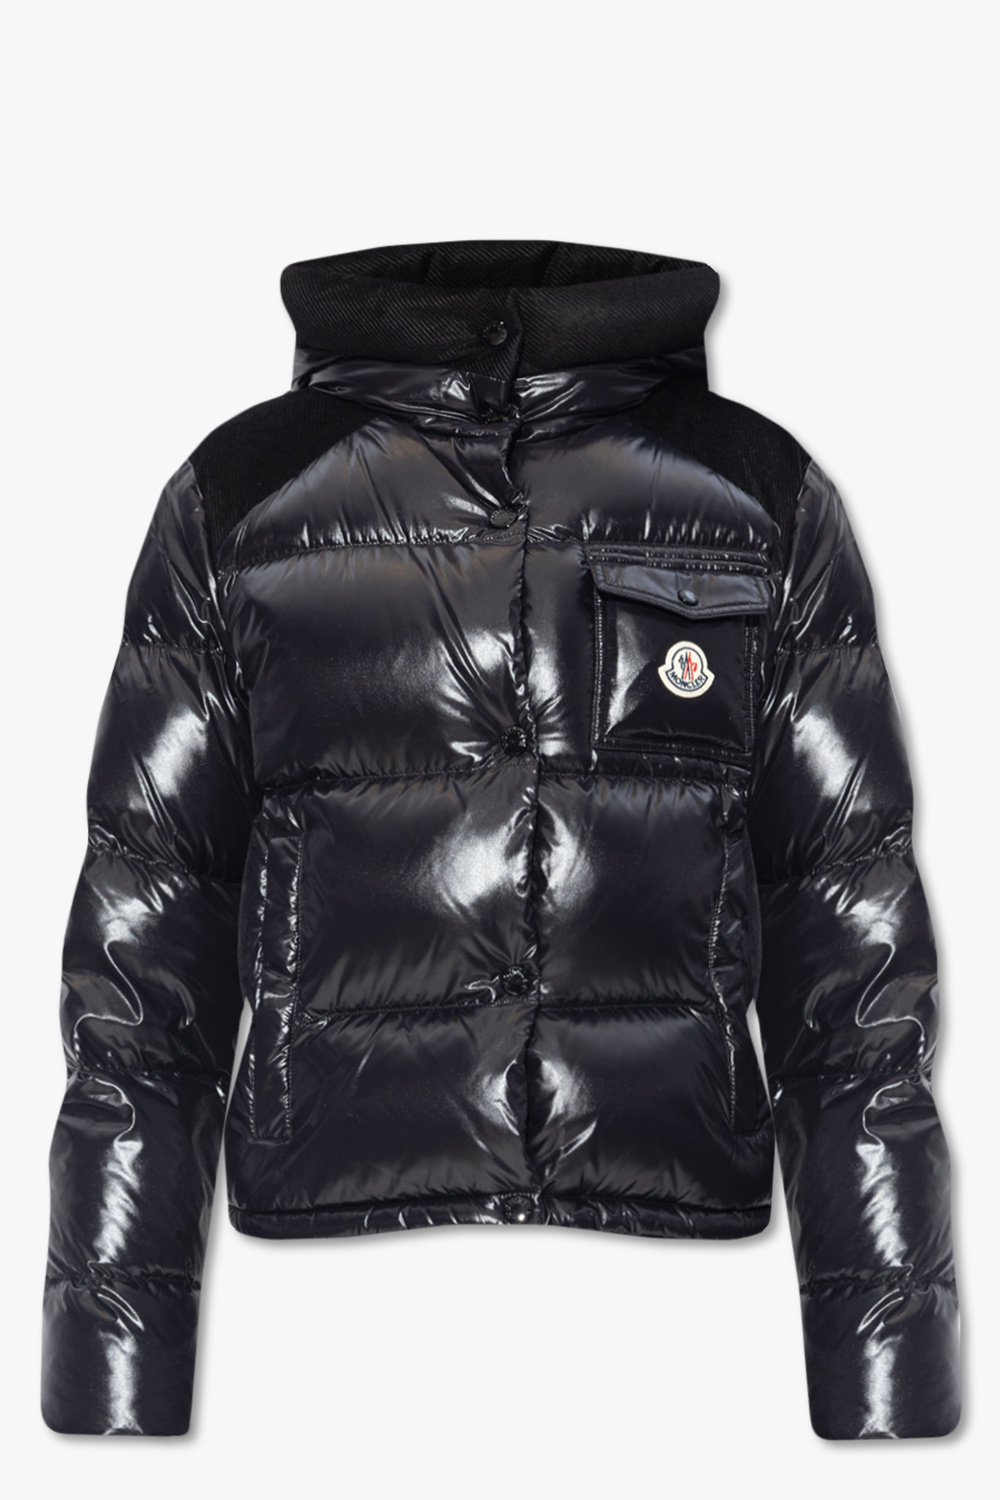 Fache' down jacket Moncler - SchaferandweinerShops GB - adidas BSC  Insulated Jacket